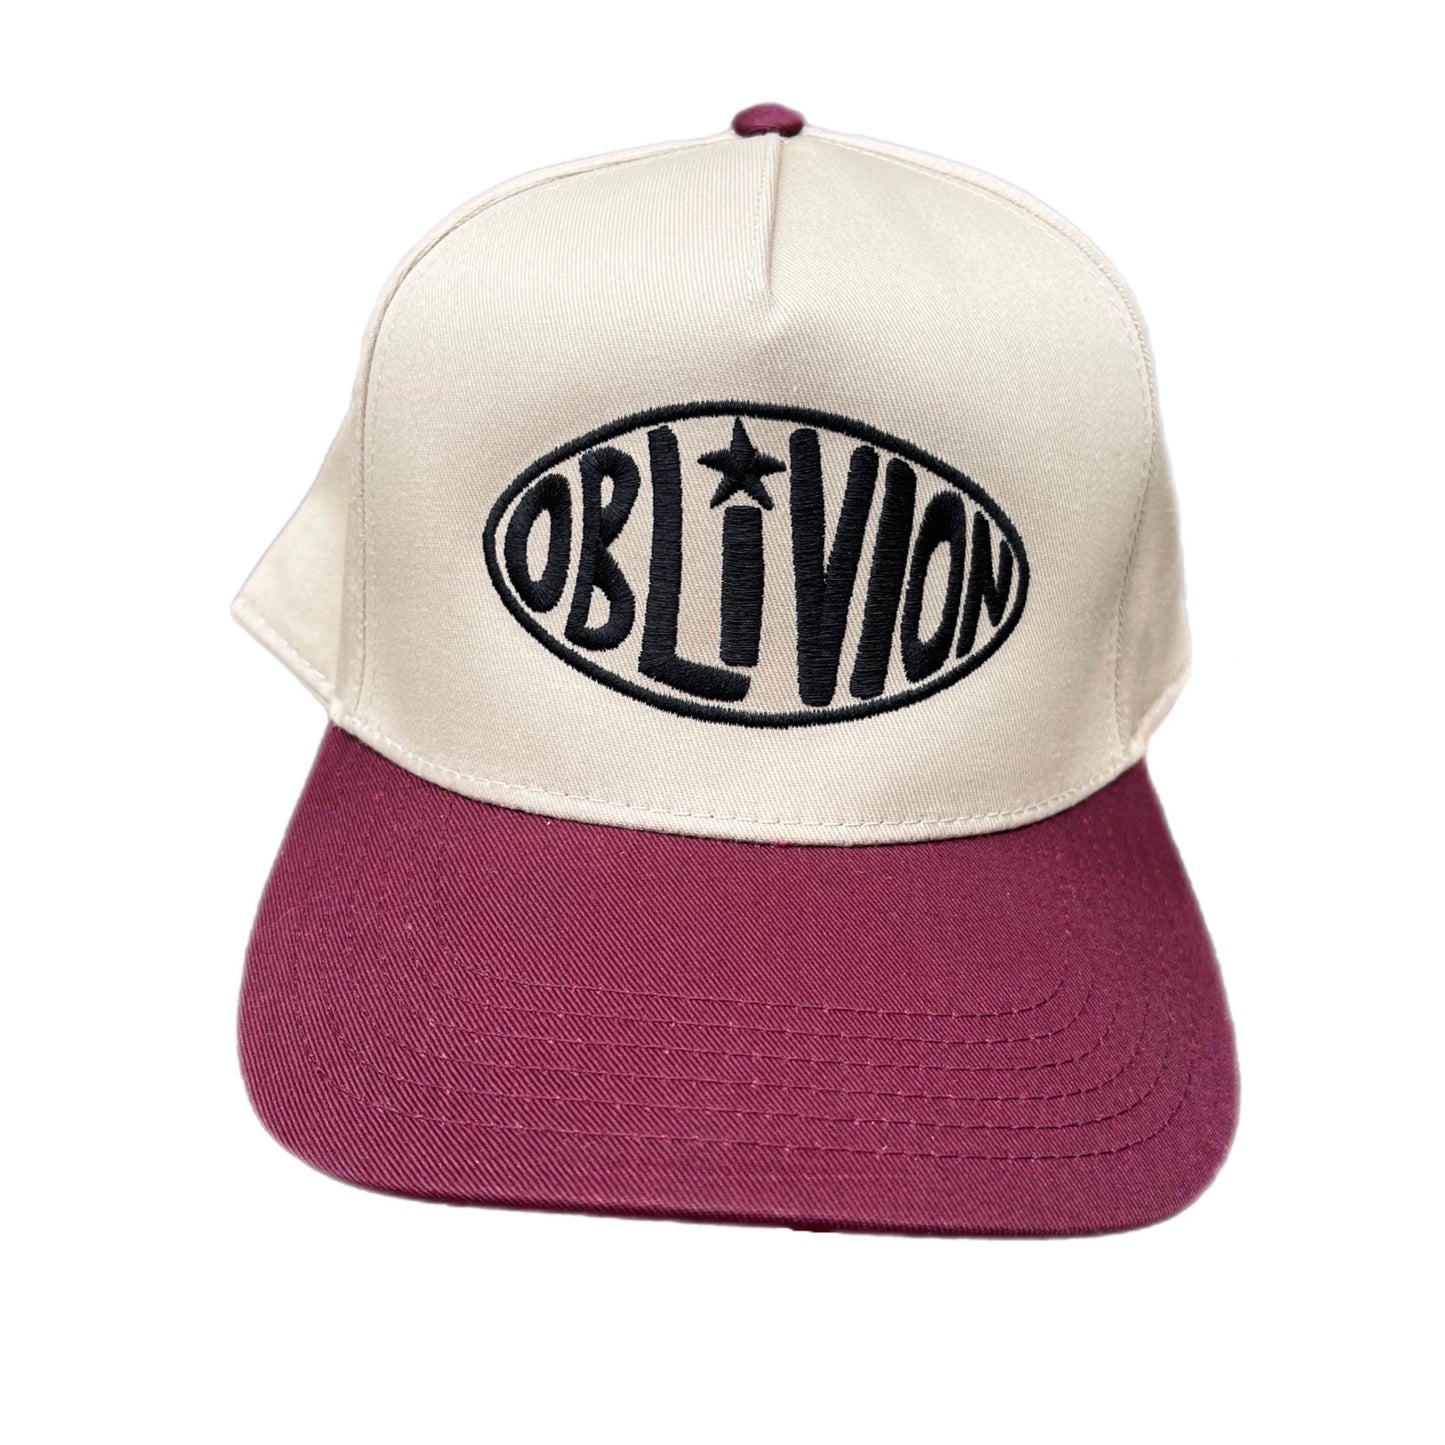 Oblivion Hat - 5 Panel Beige/Maroon